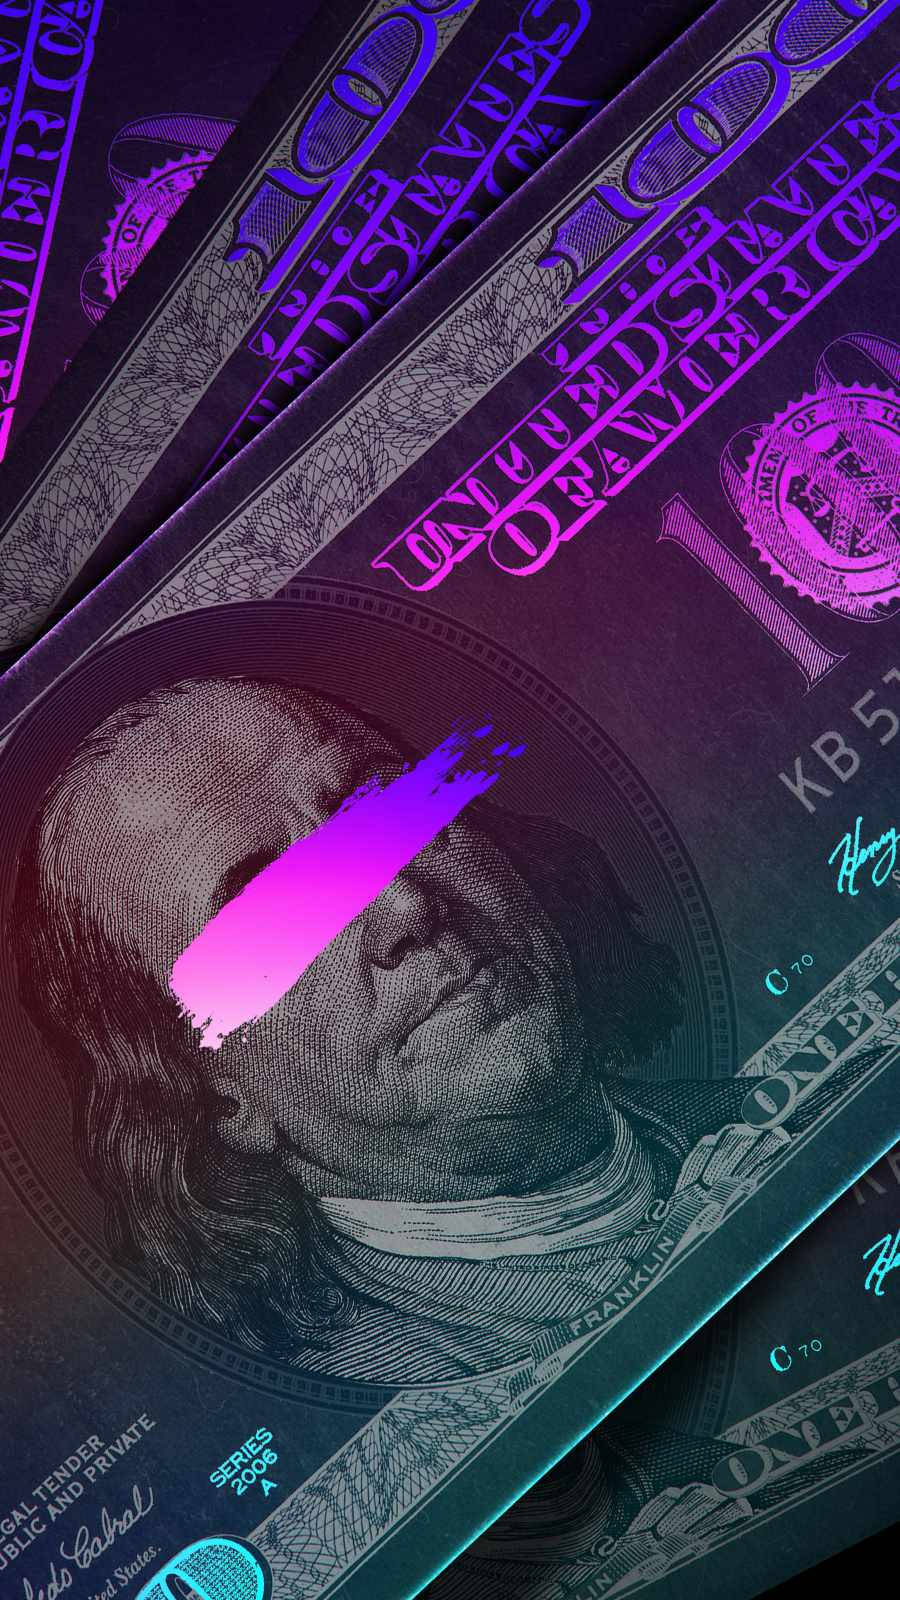 Amerikanskiphone-bakgrundsbild Med Dollar-sedel. Wallpaper